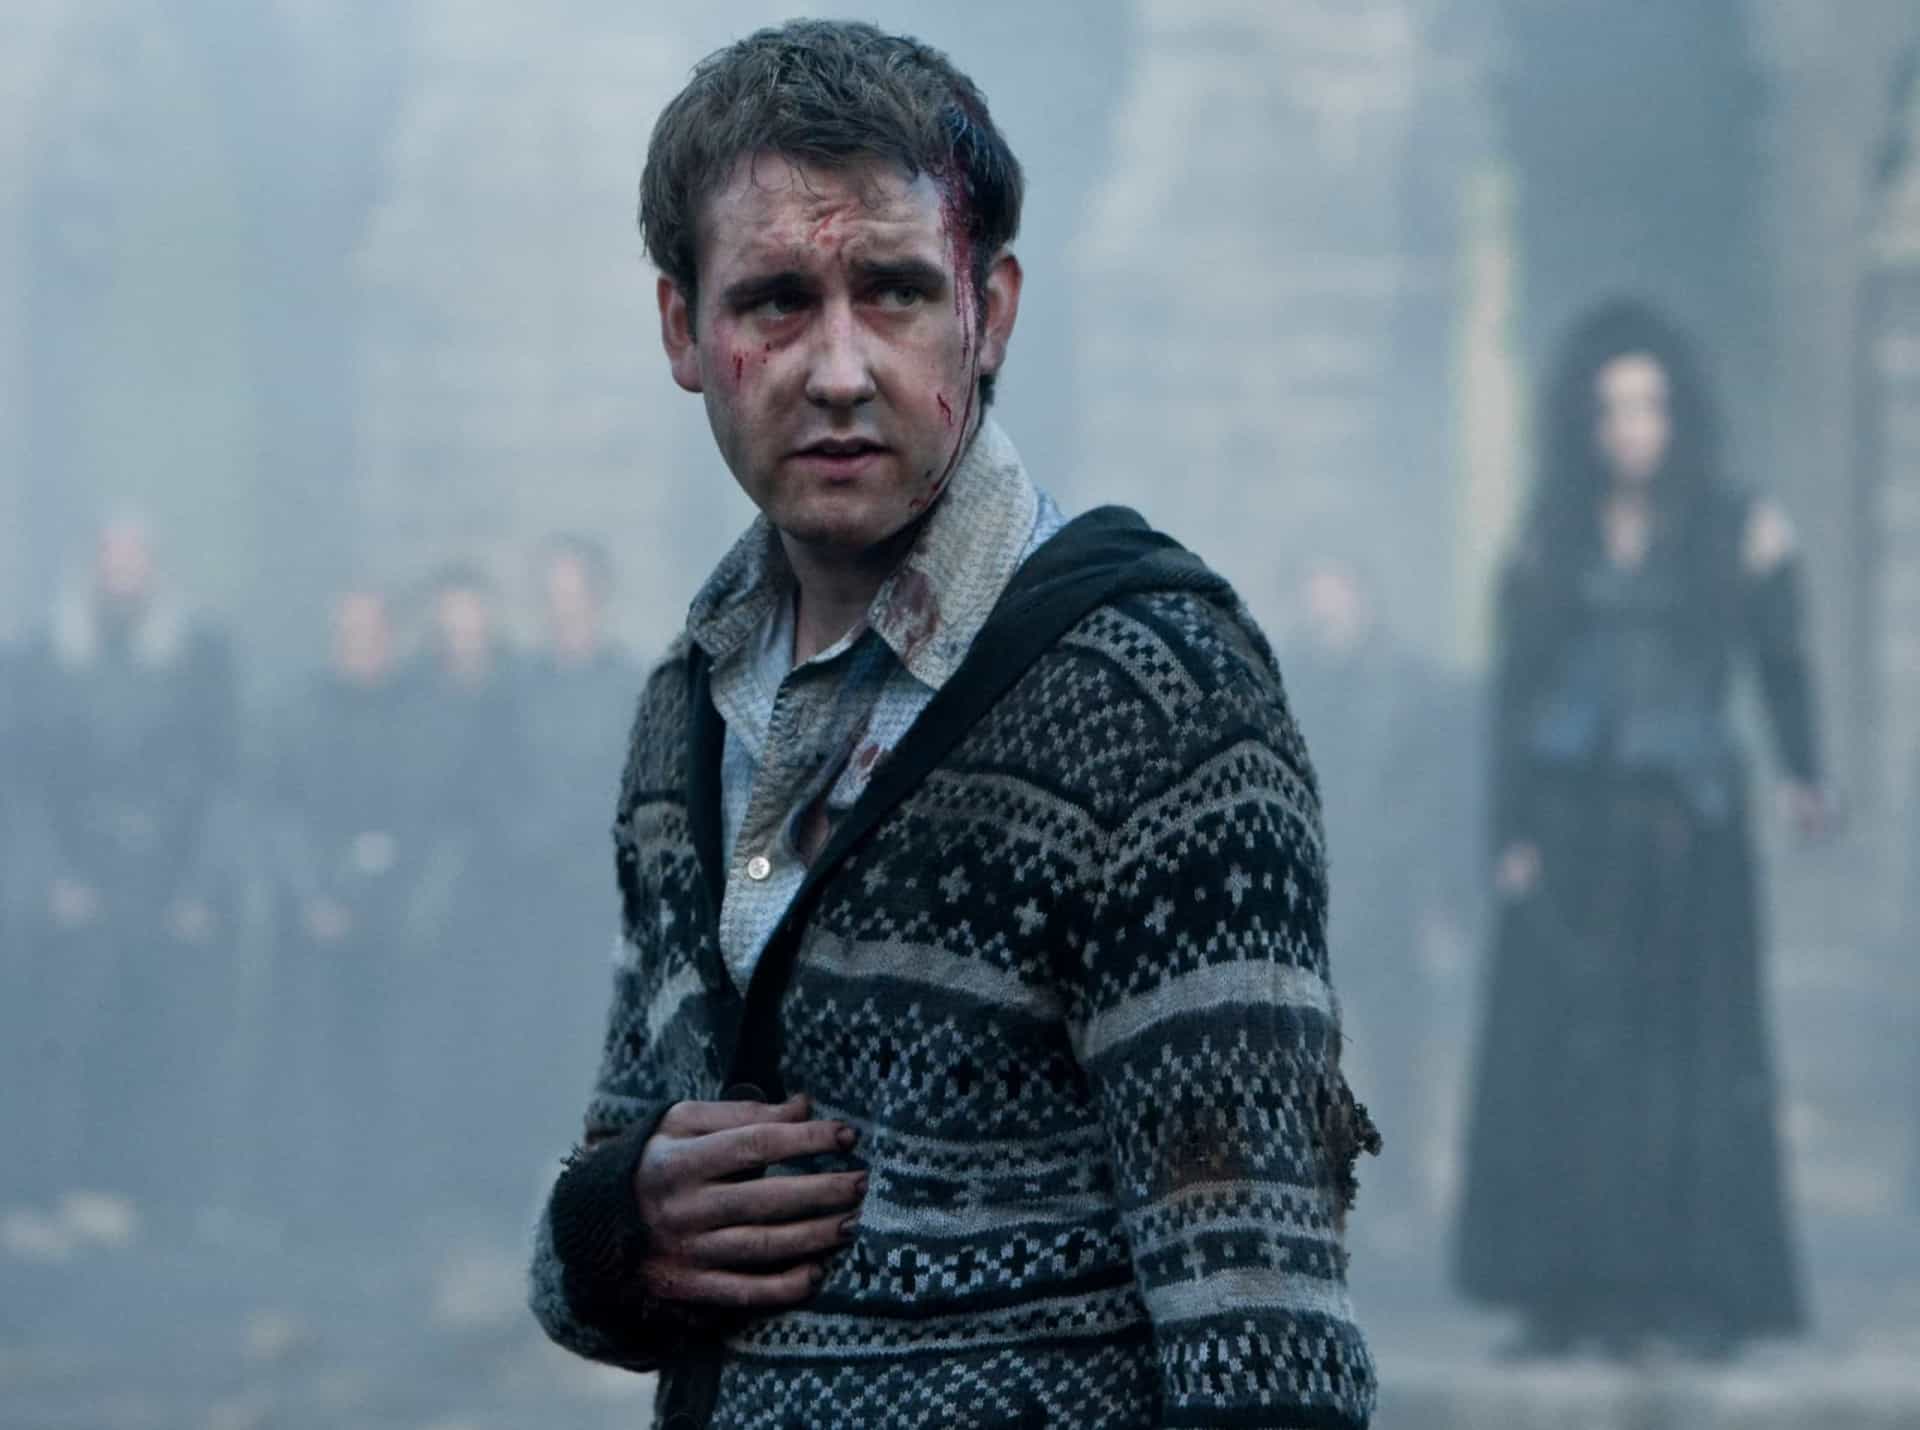 <p>Todo el mundo tenía debilidad por el personaje de Matthew Lewis, Neville Longbottom. La actuación destacada de Lewis en la última película, "Harry Potter and the Deathly Hallows - Part 2" (2011) fue reconocida por la crítica.</p>